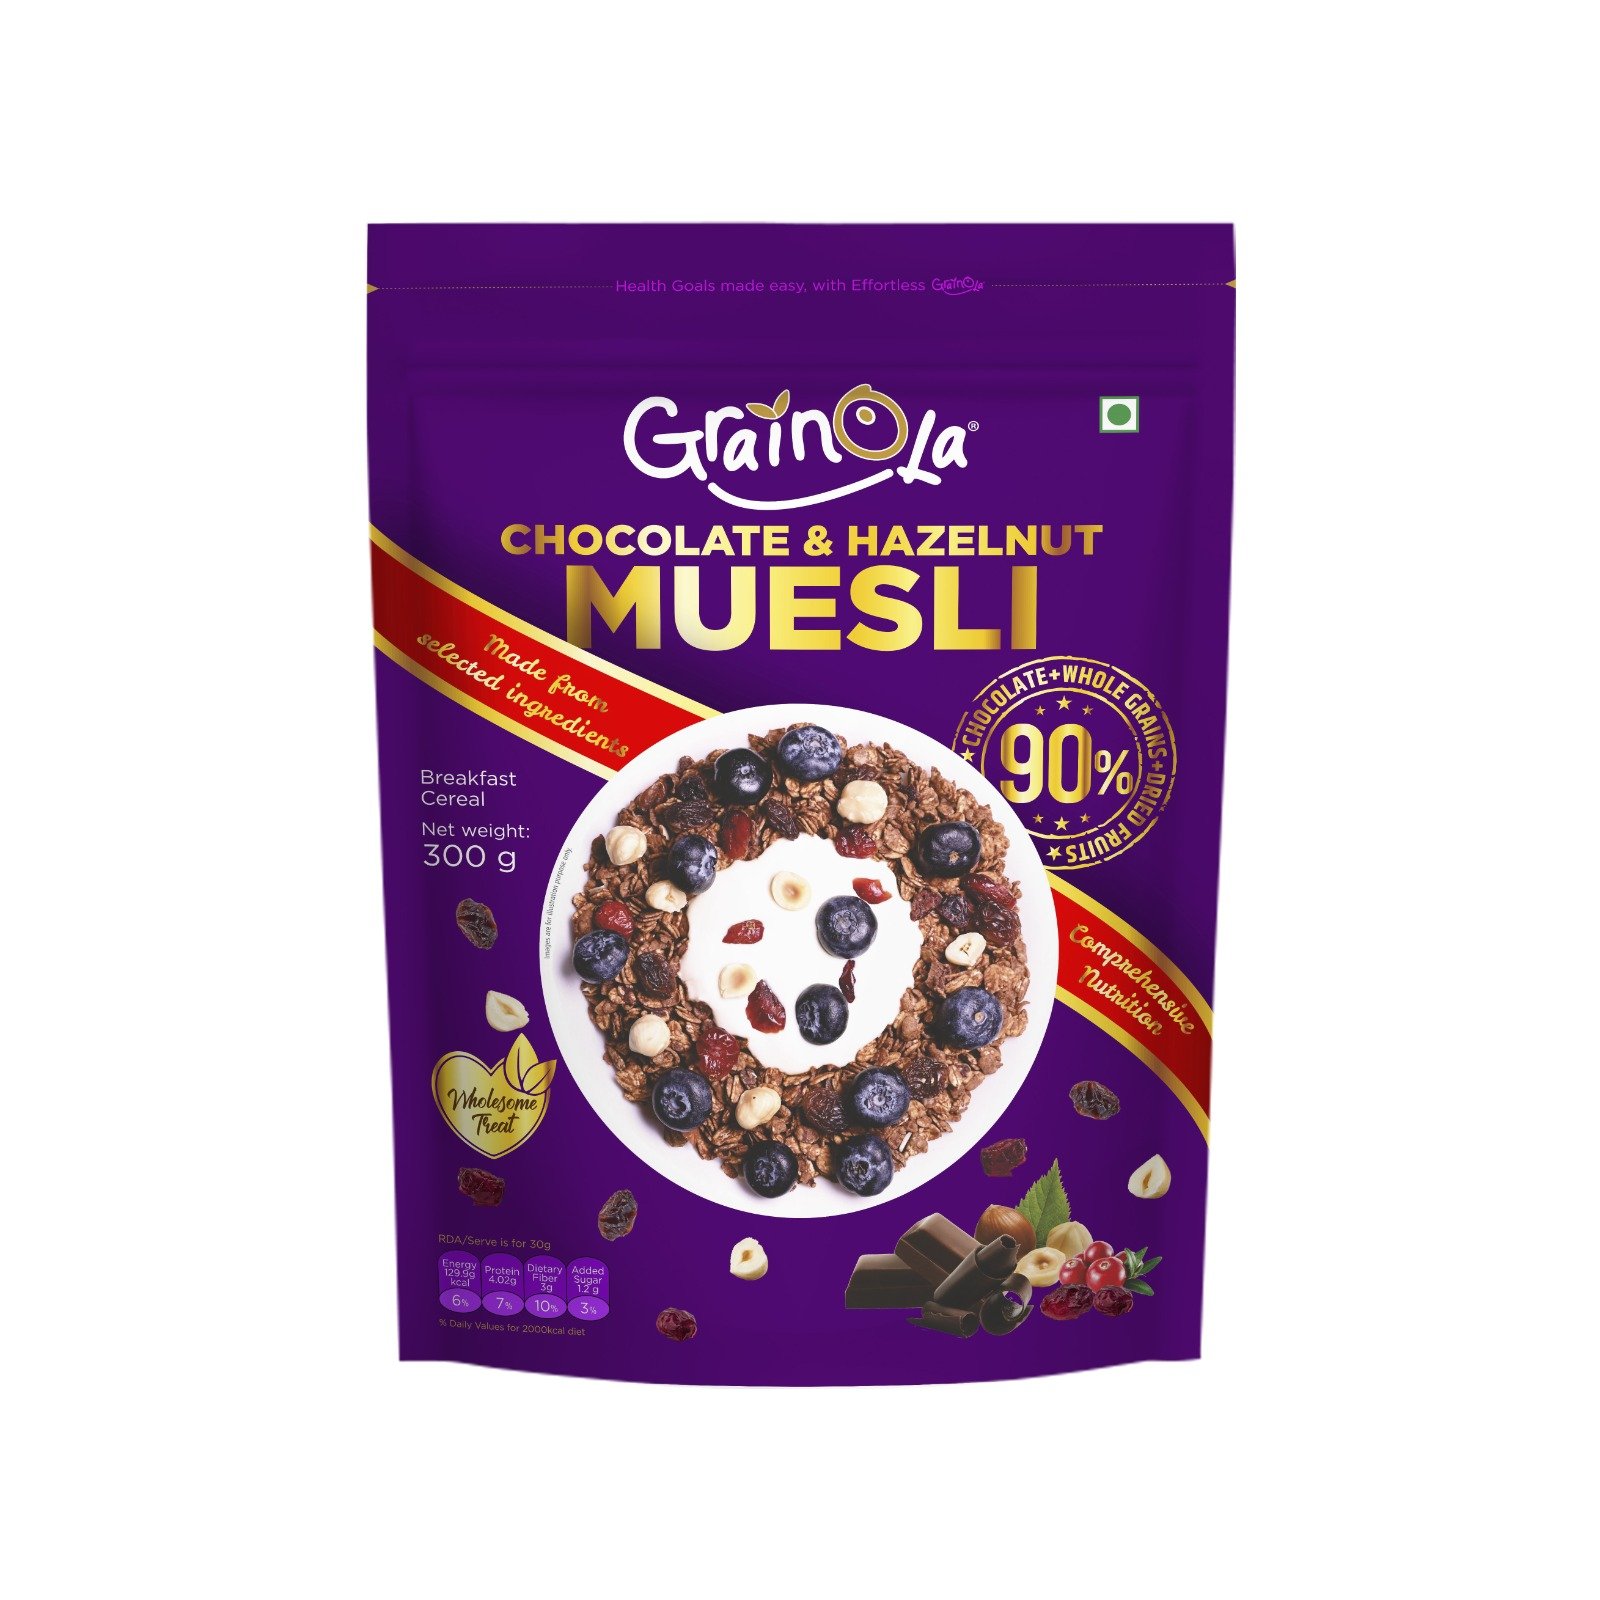 Crunchy müsli with chocolate and hazelnuts